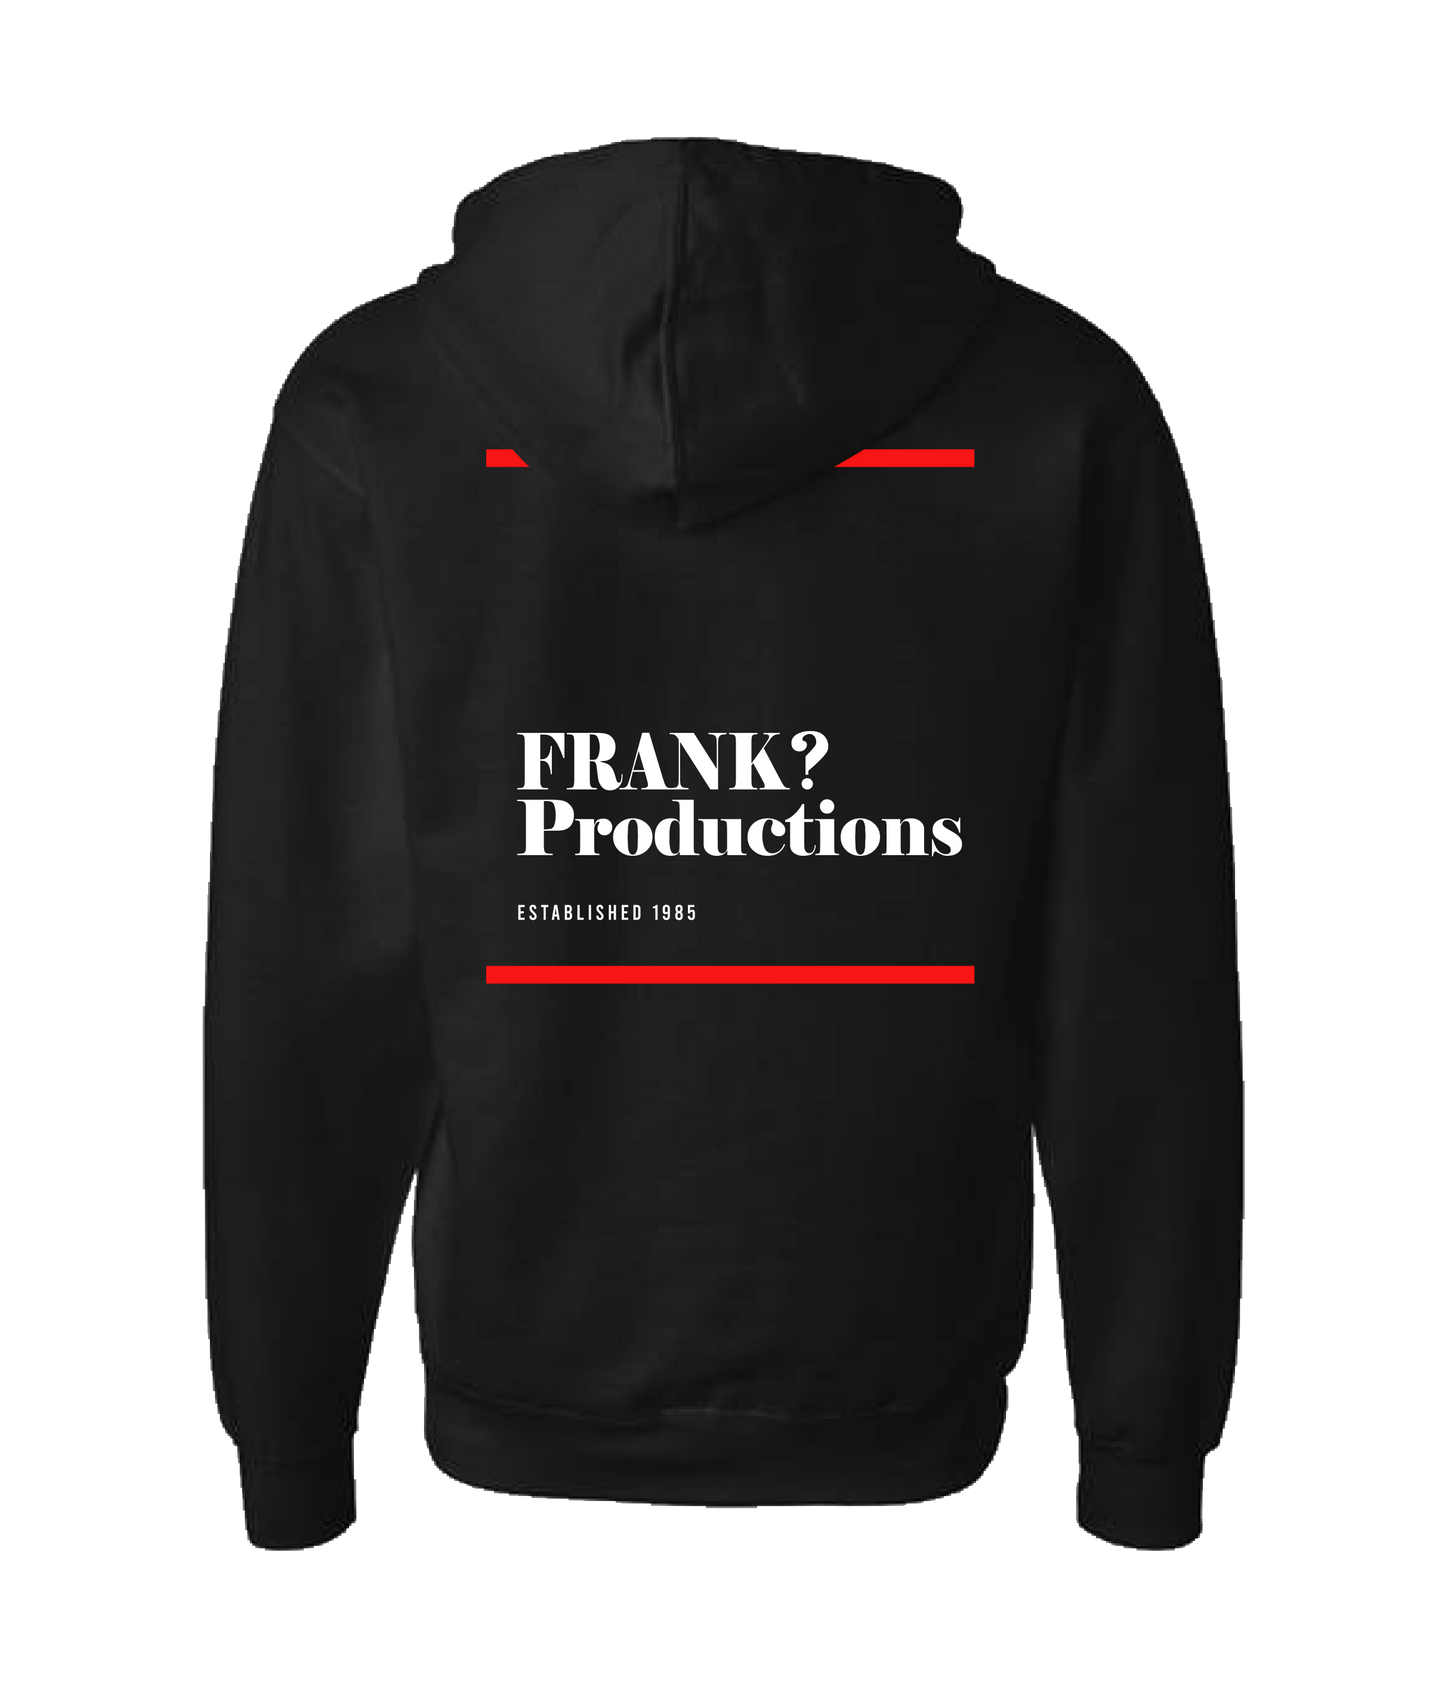 FRANK? Piccolella - Established 1985 - Black Zip Up Hoodie